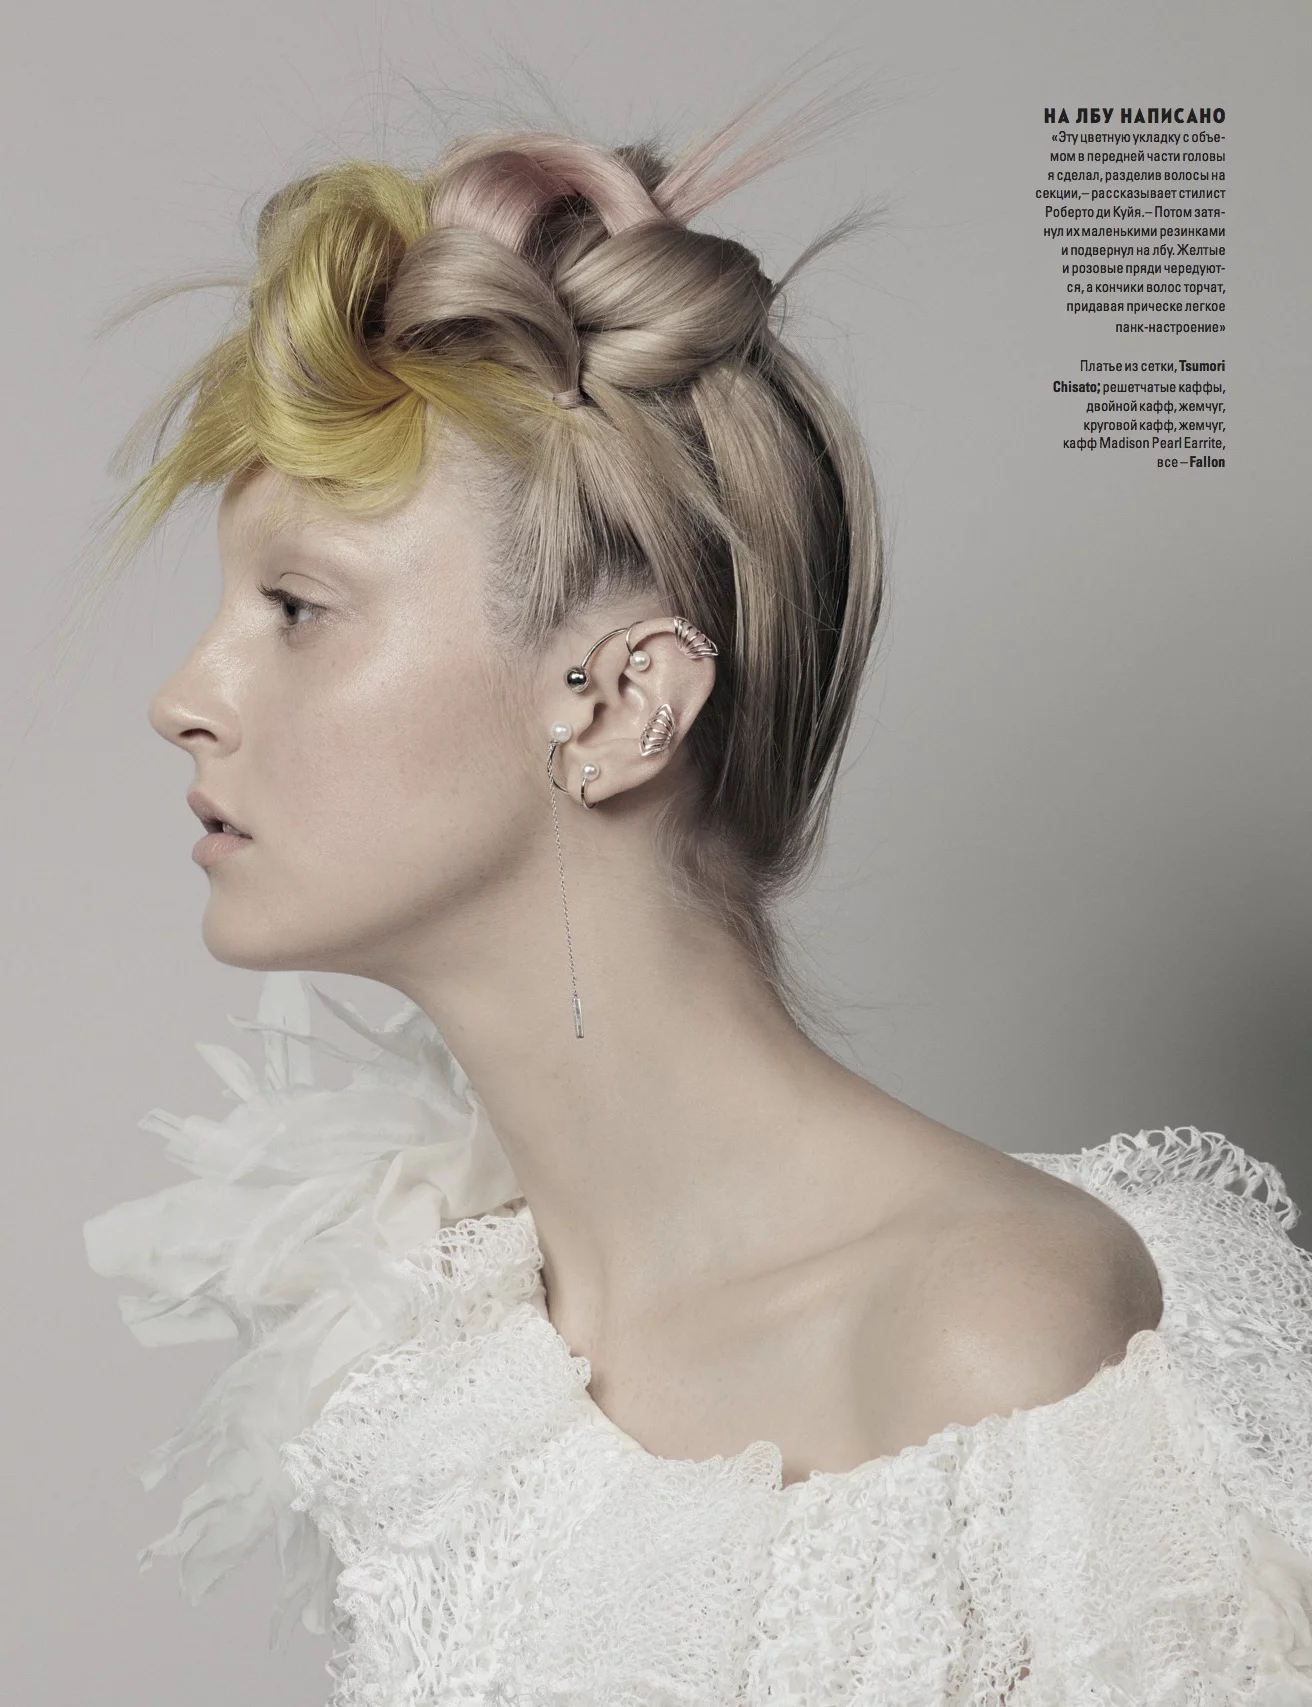 Vogue Ukraine 3 by Ralph MECKE